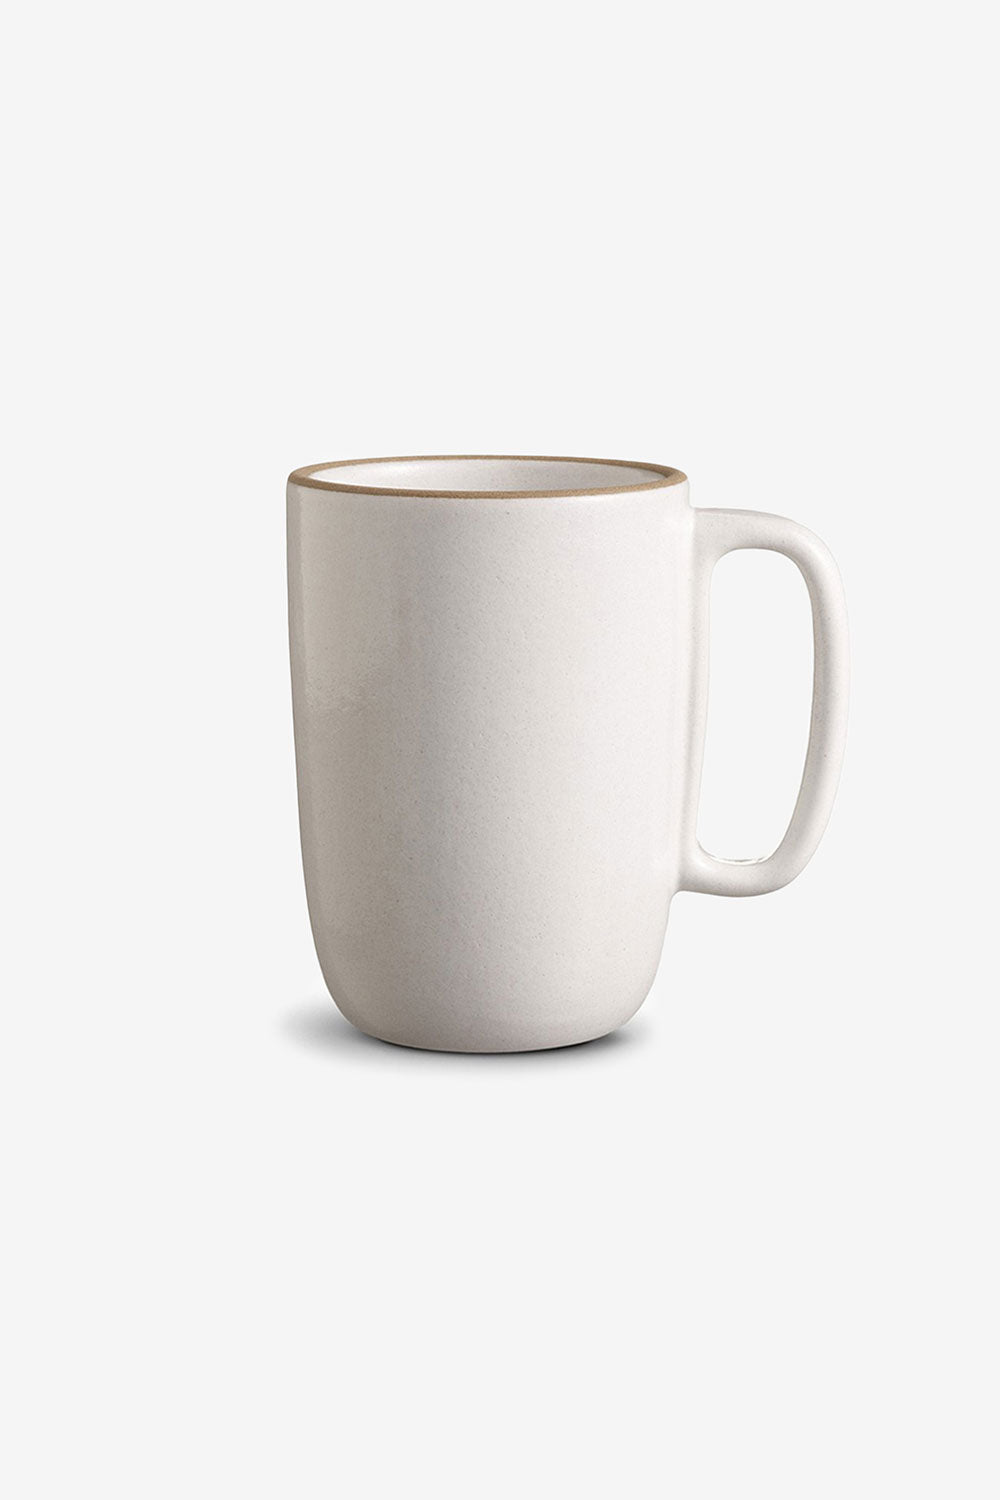 Heath Ceramics Large Mug in Opaque White.